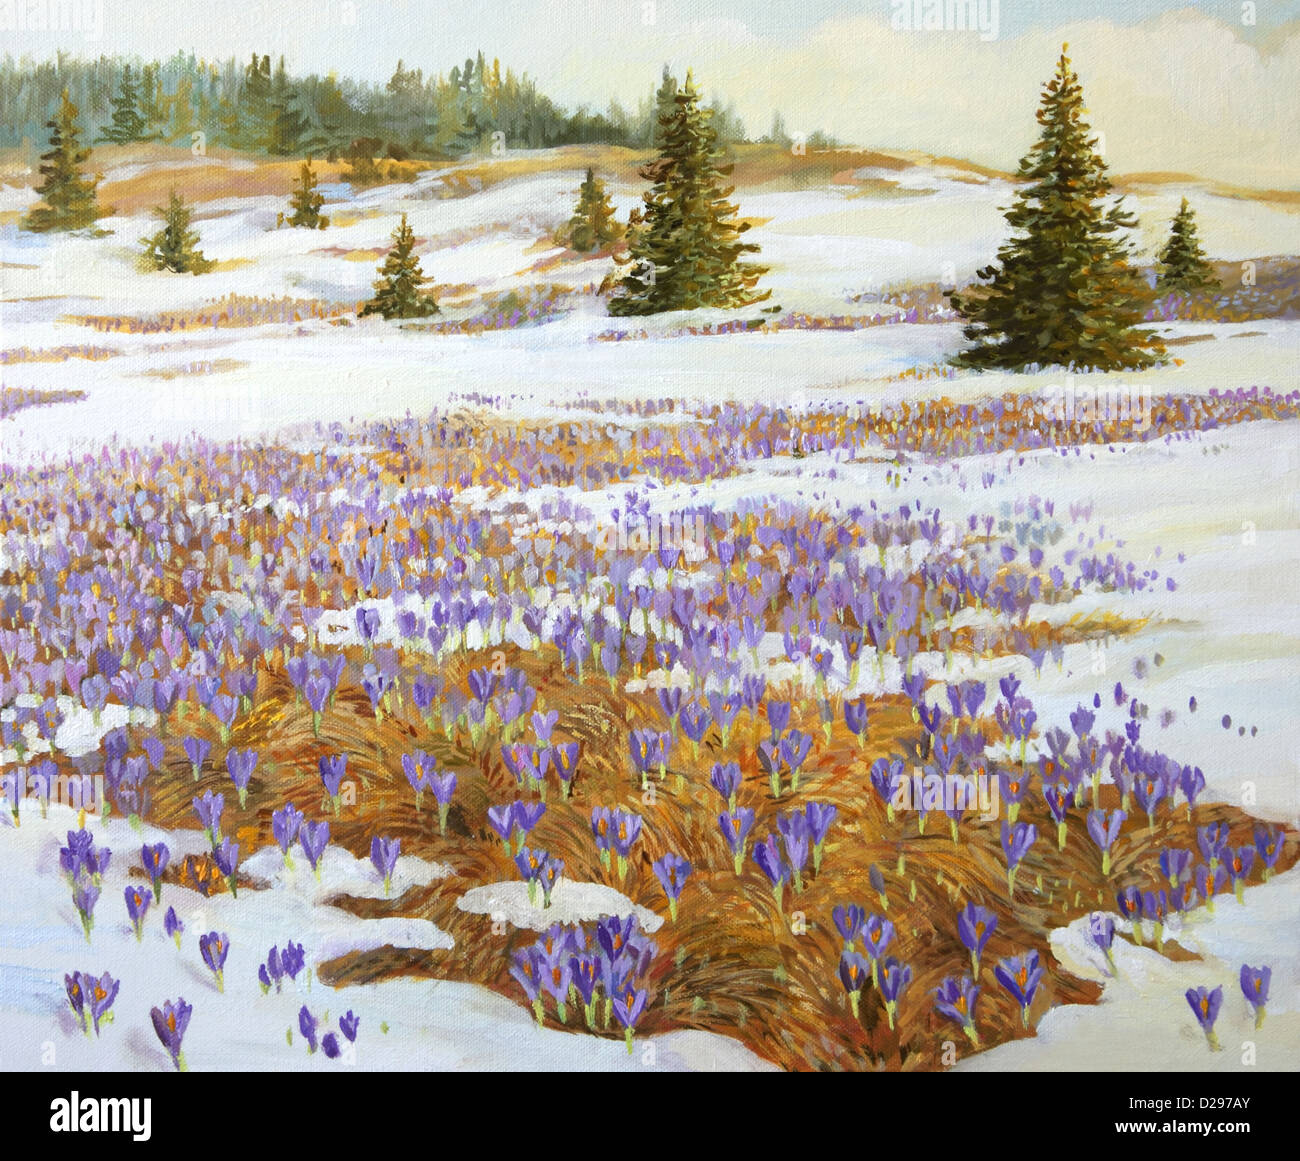 Une peinture à l'huile sur toile d'une prairie avec des plaques de neige et de floraison fleurs crocus violet. Banque D'Images